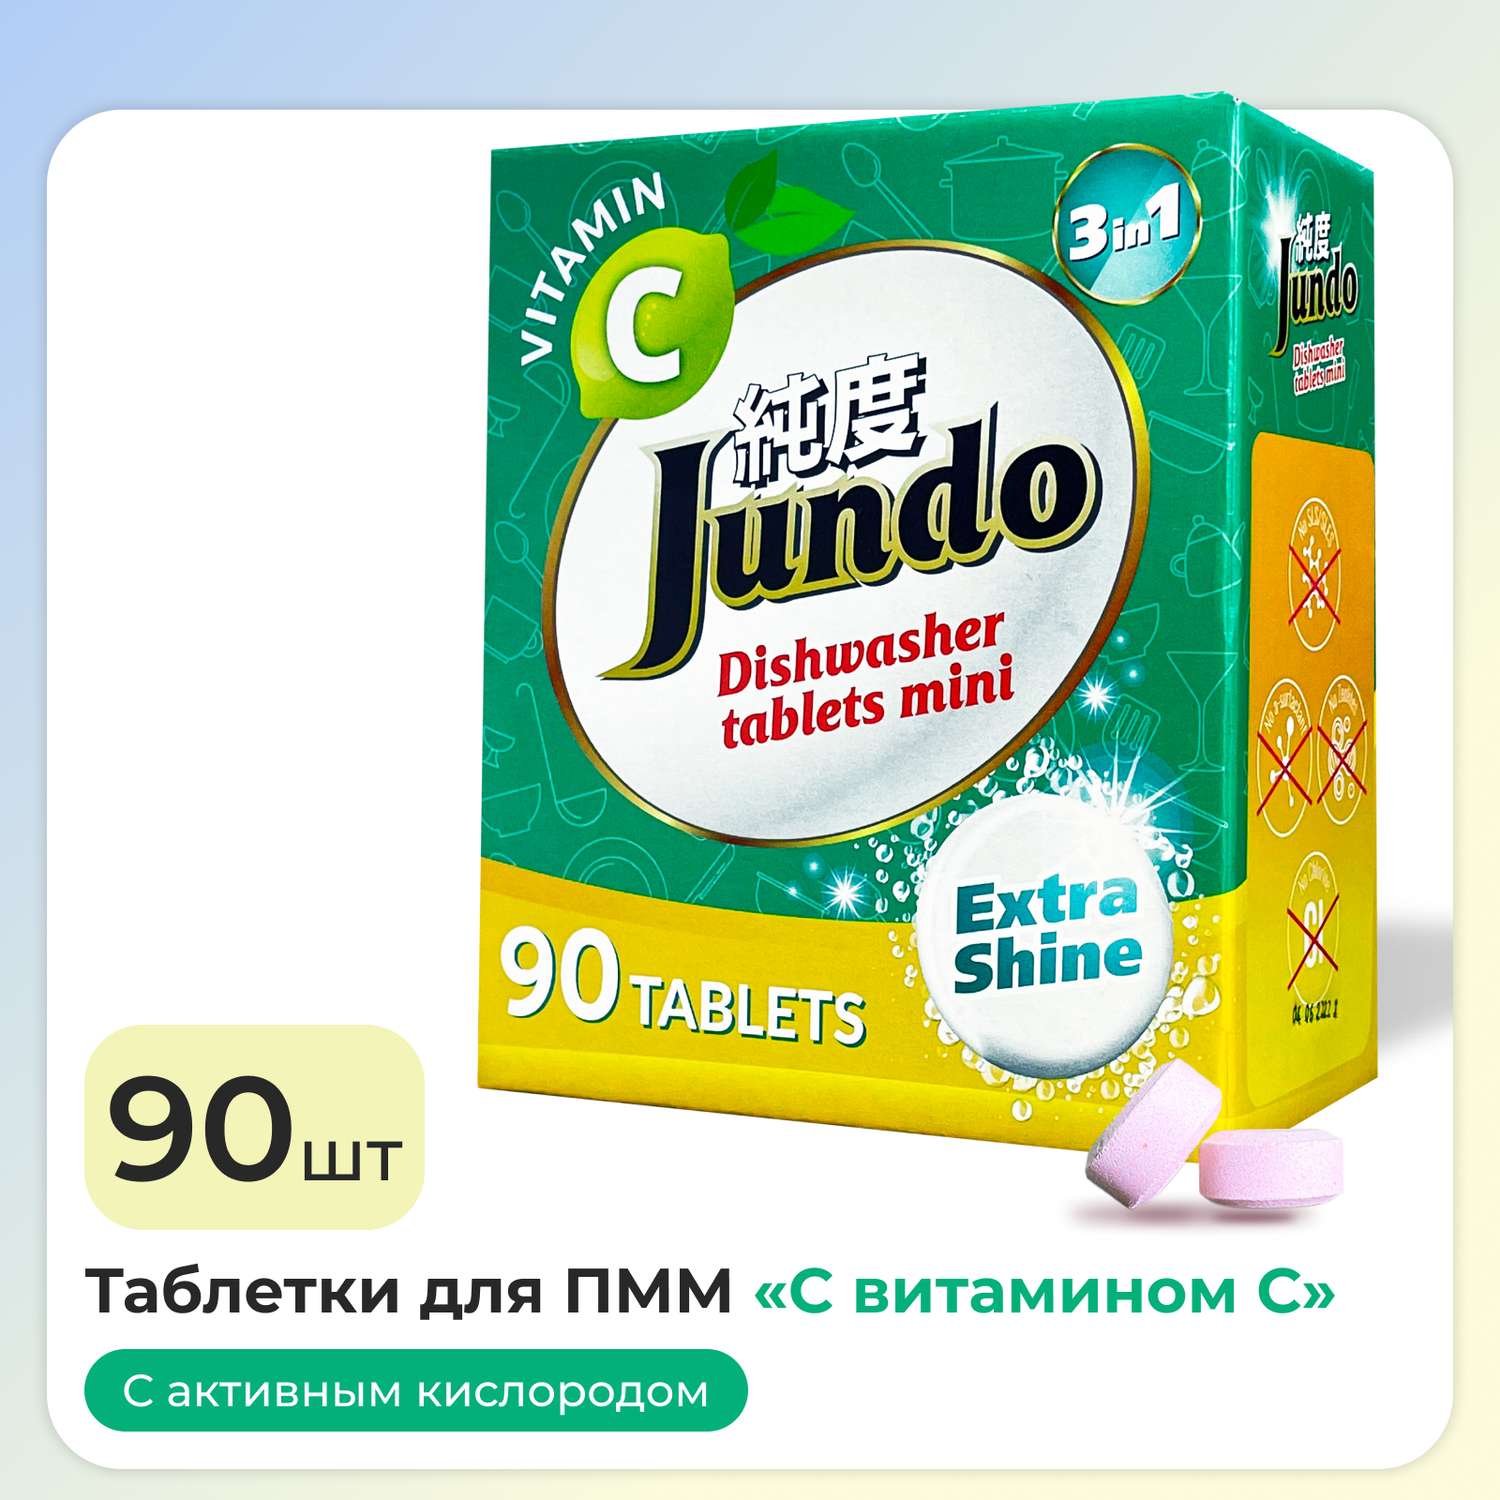 Таблетки для ПММ Jundo Vitamin C 90 шт в мини-формате 3 в 1 с витамином С и активным кислородом - фото 1